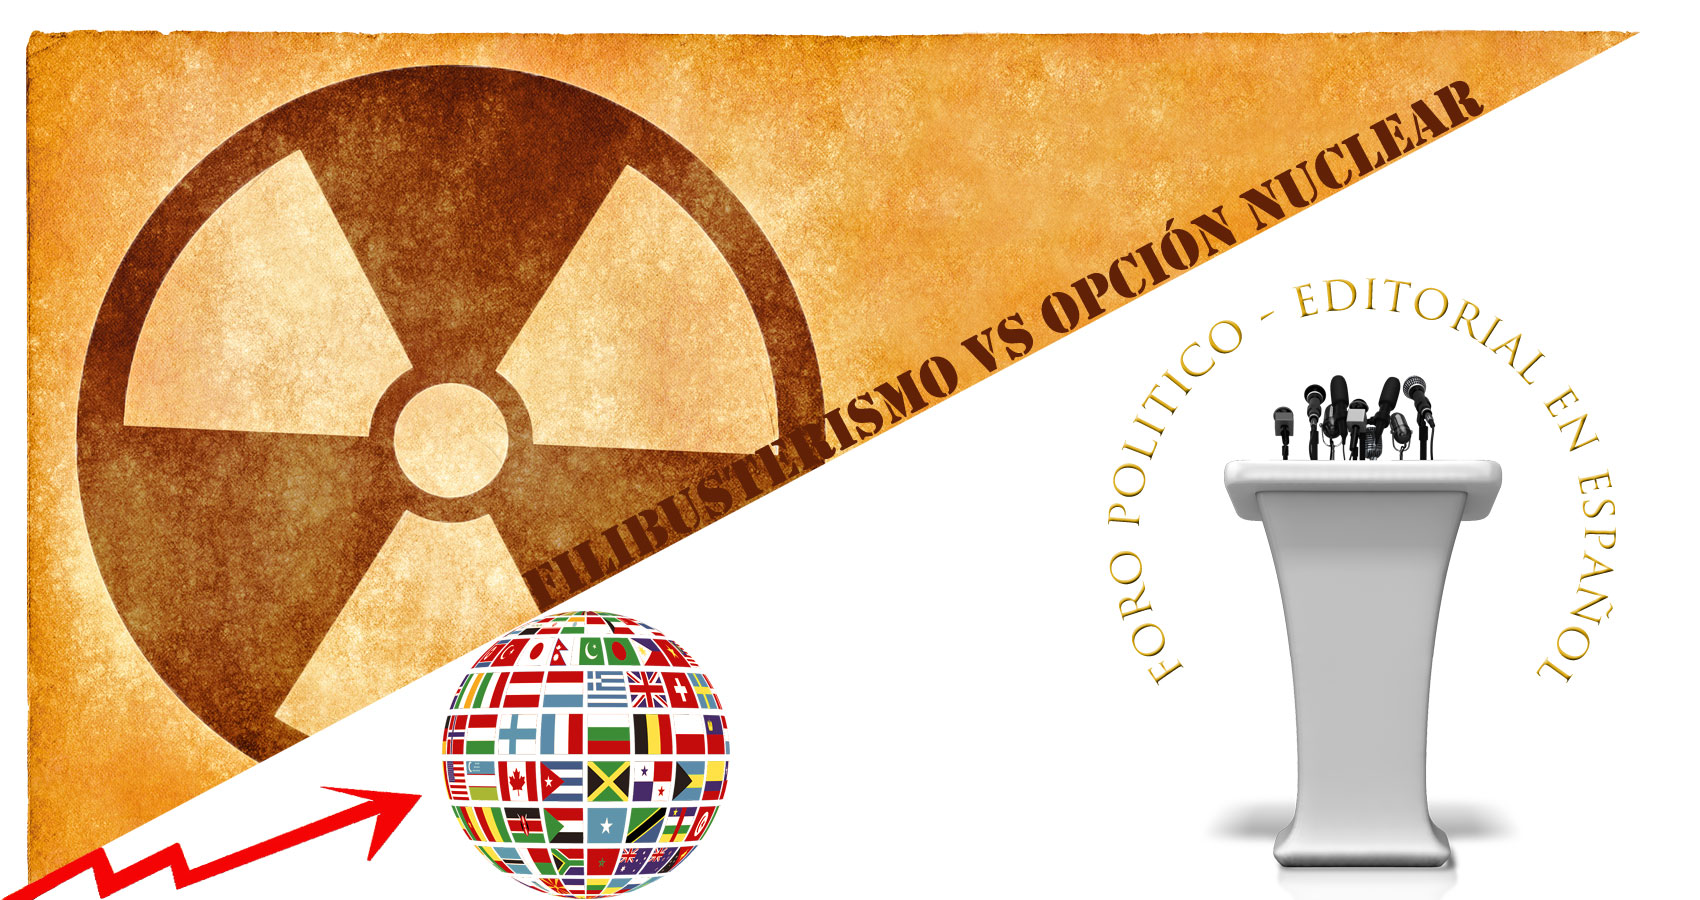 Foro Politico - Filibusterismo vs Opción Nuclear by José A. Gómez at Spillwords.com